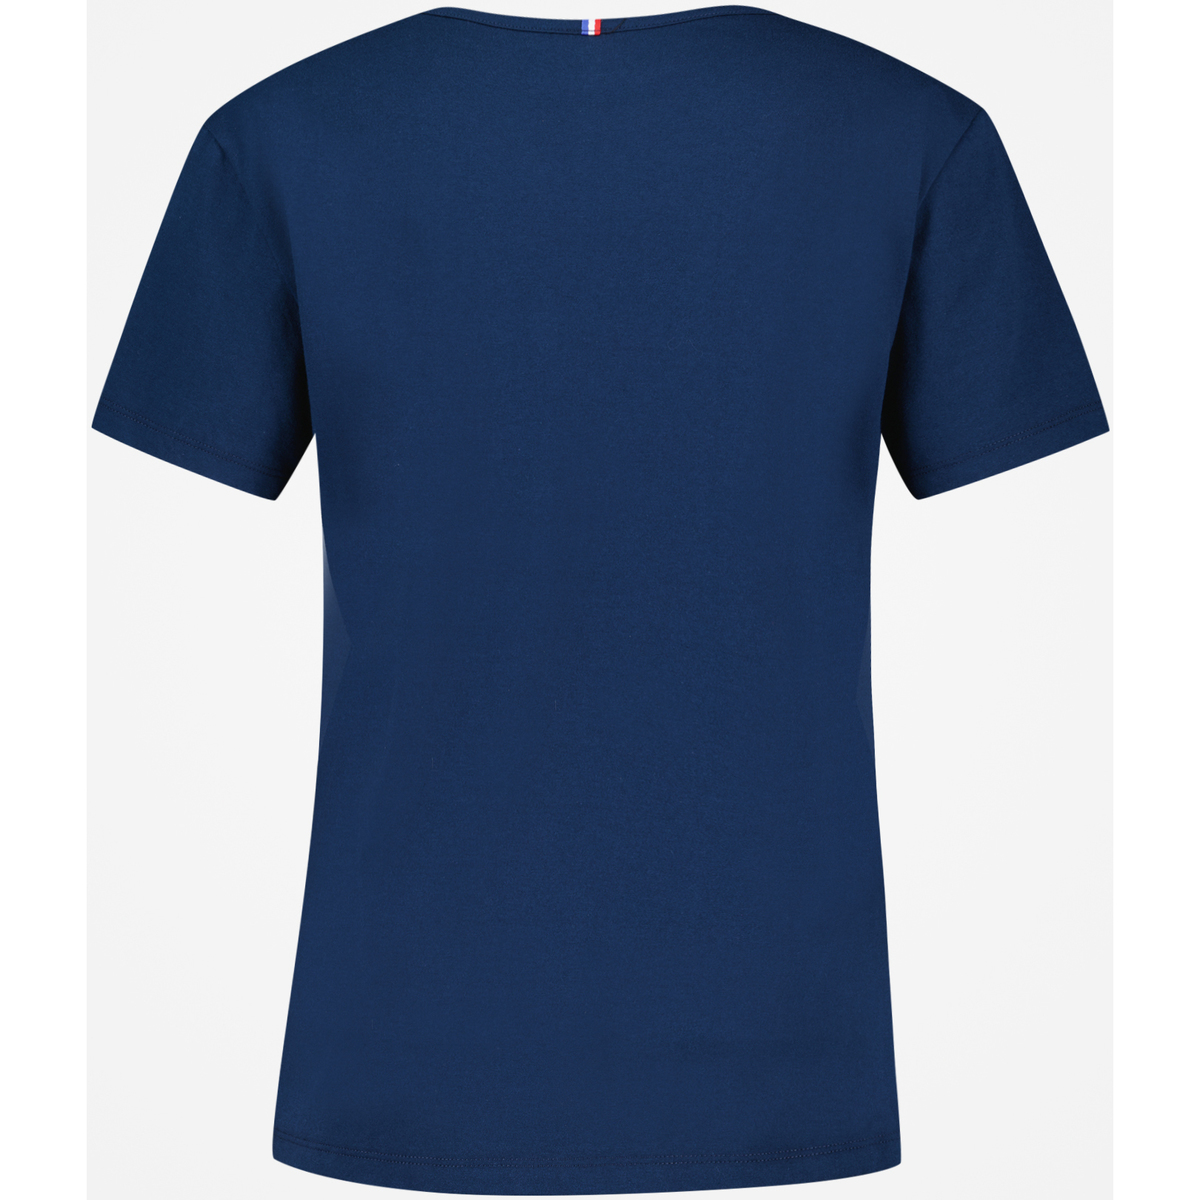 Le Coq Sportif Bleu T-shirt Femme P18pv9iM